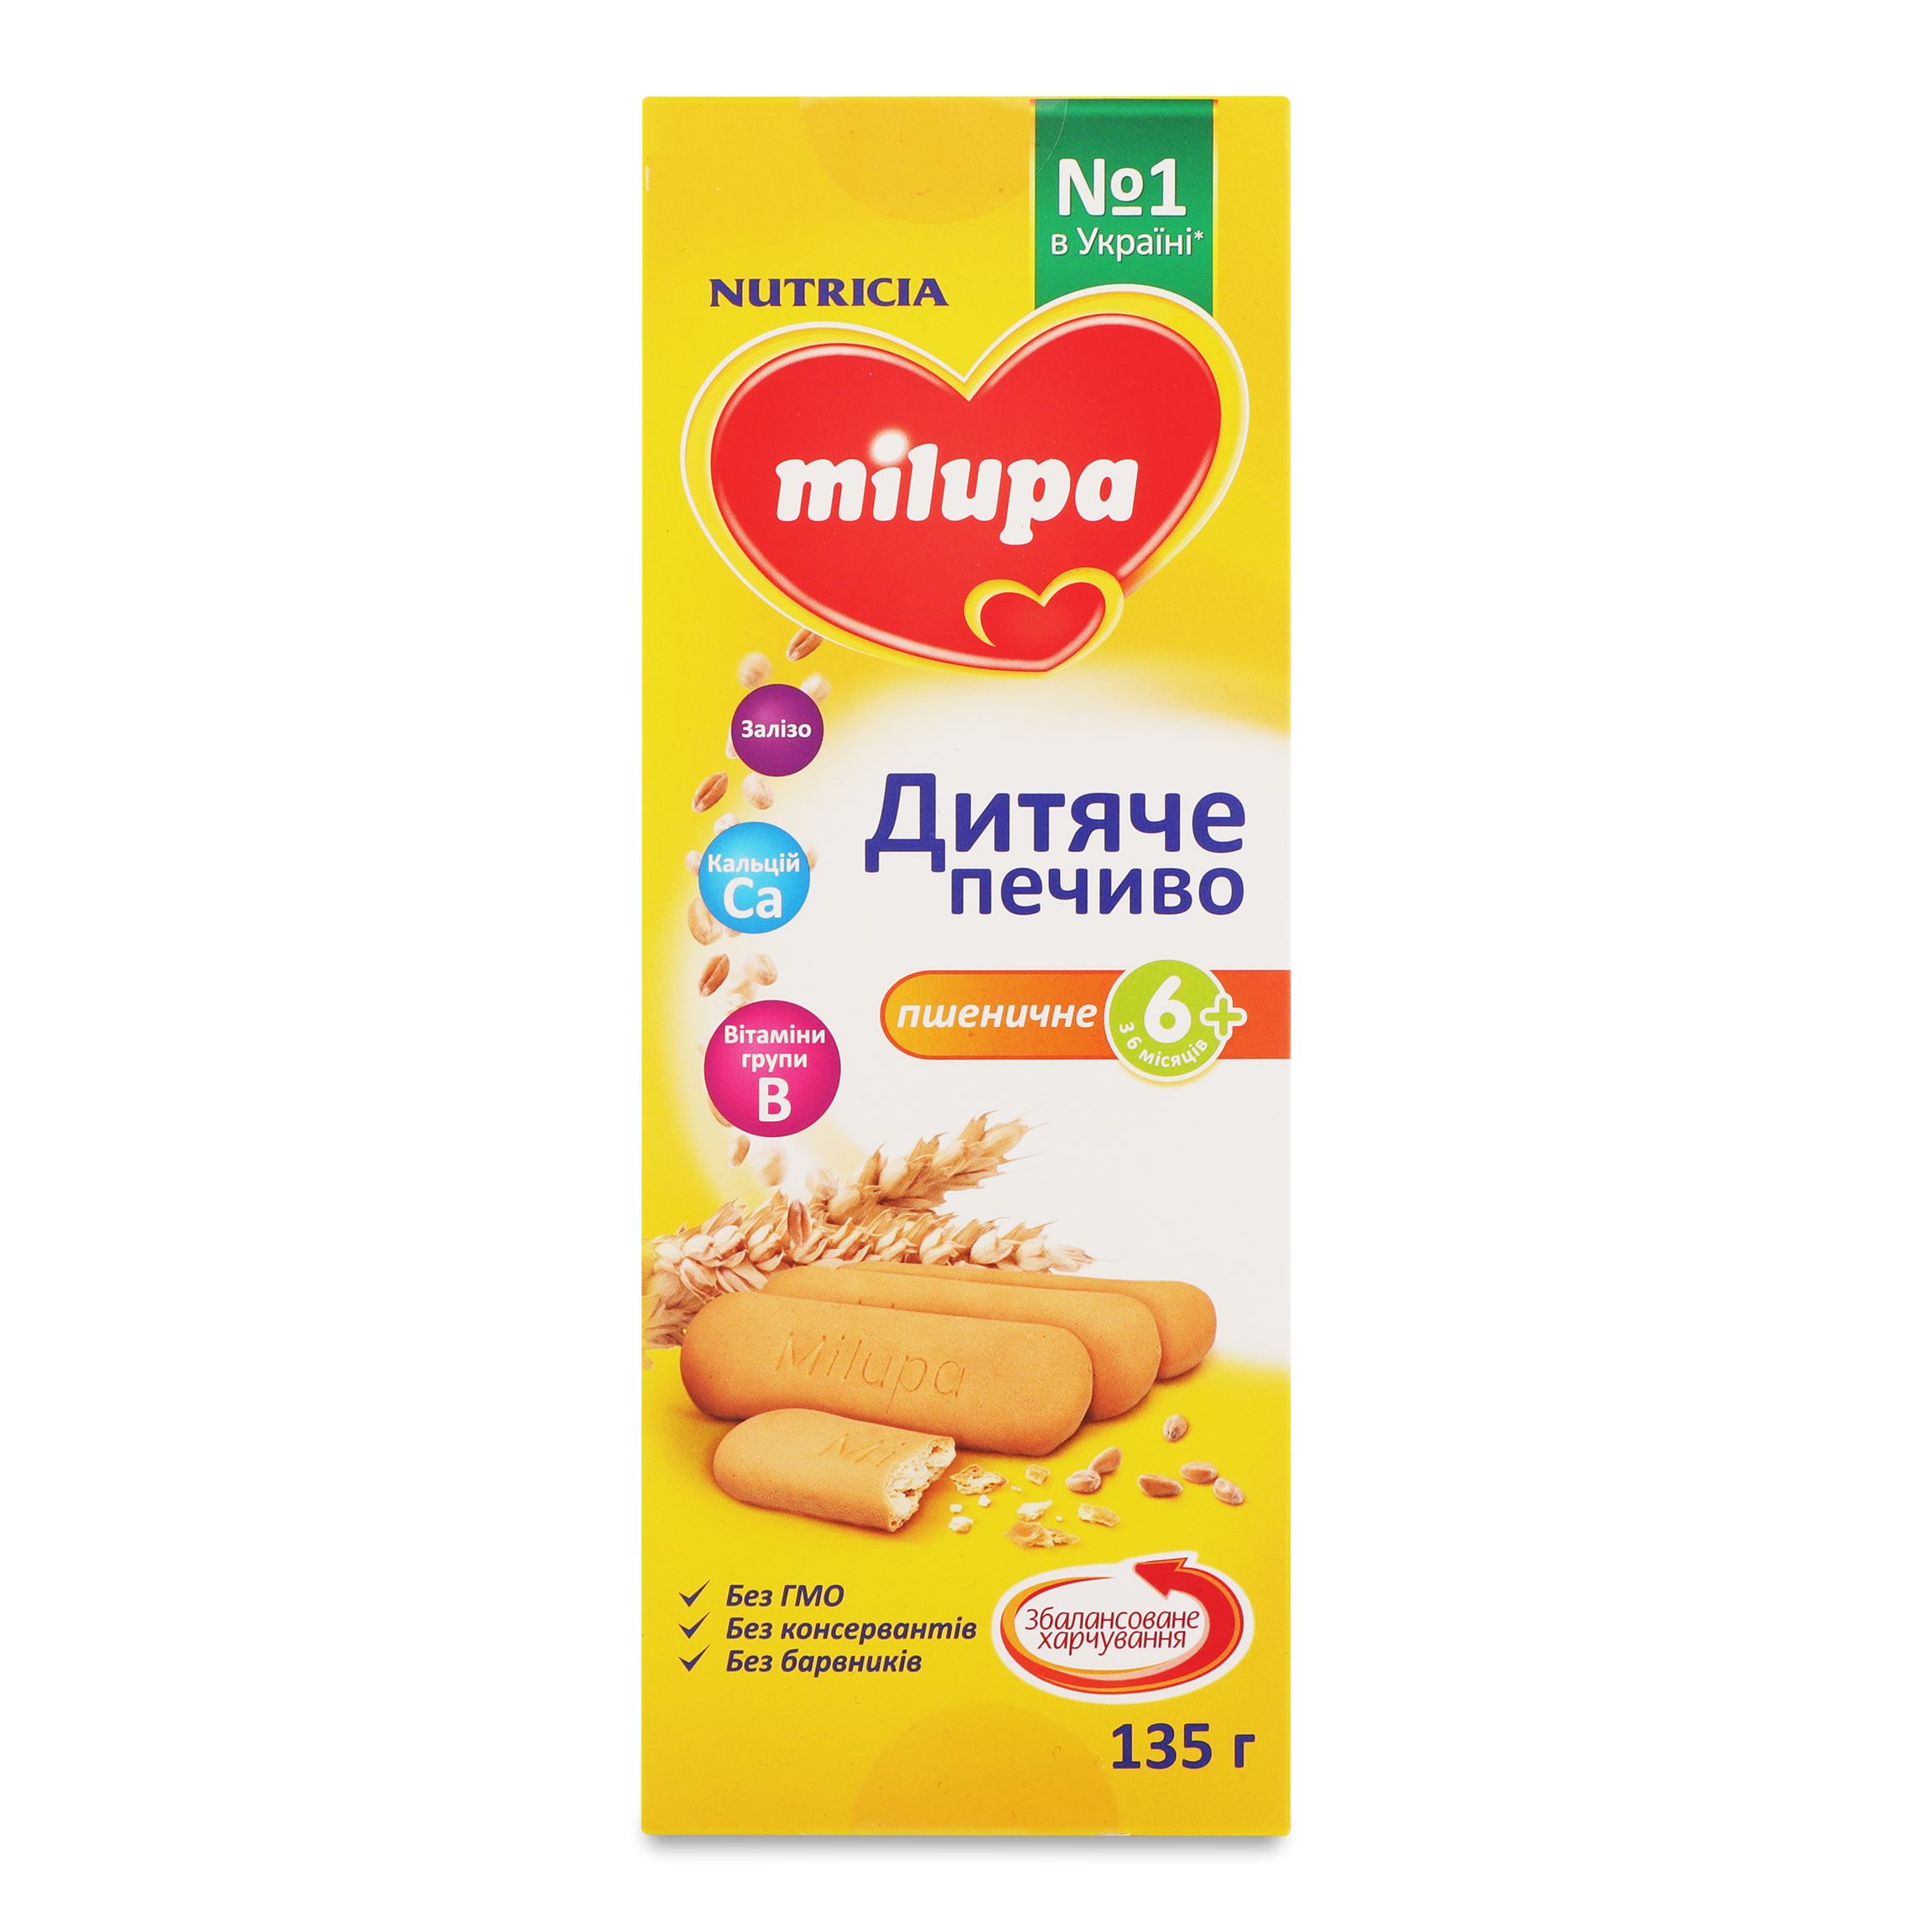 Печиво Nutricia Milupa дитяче пшеничне для дітей від 6 місяців 135г